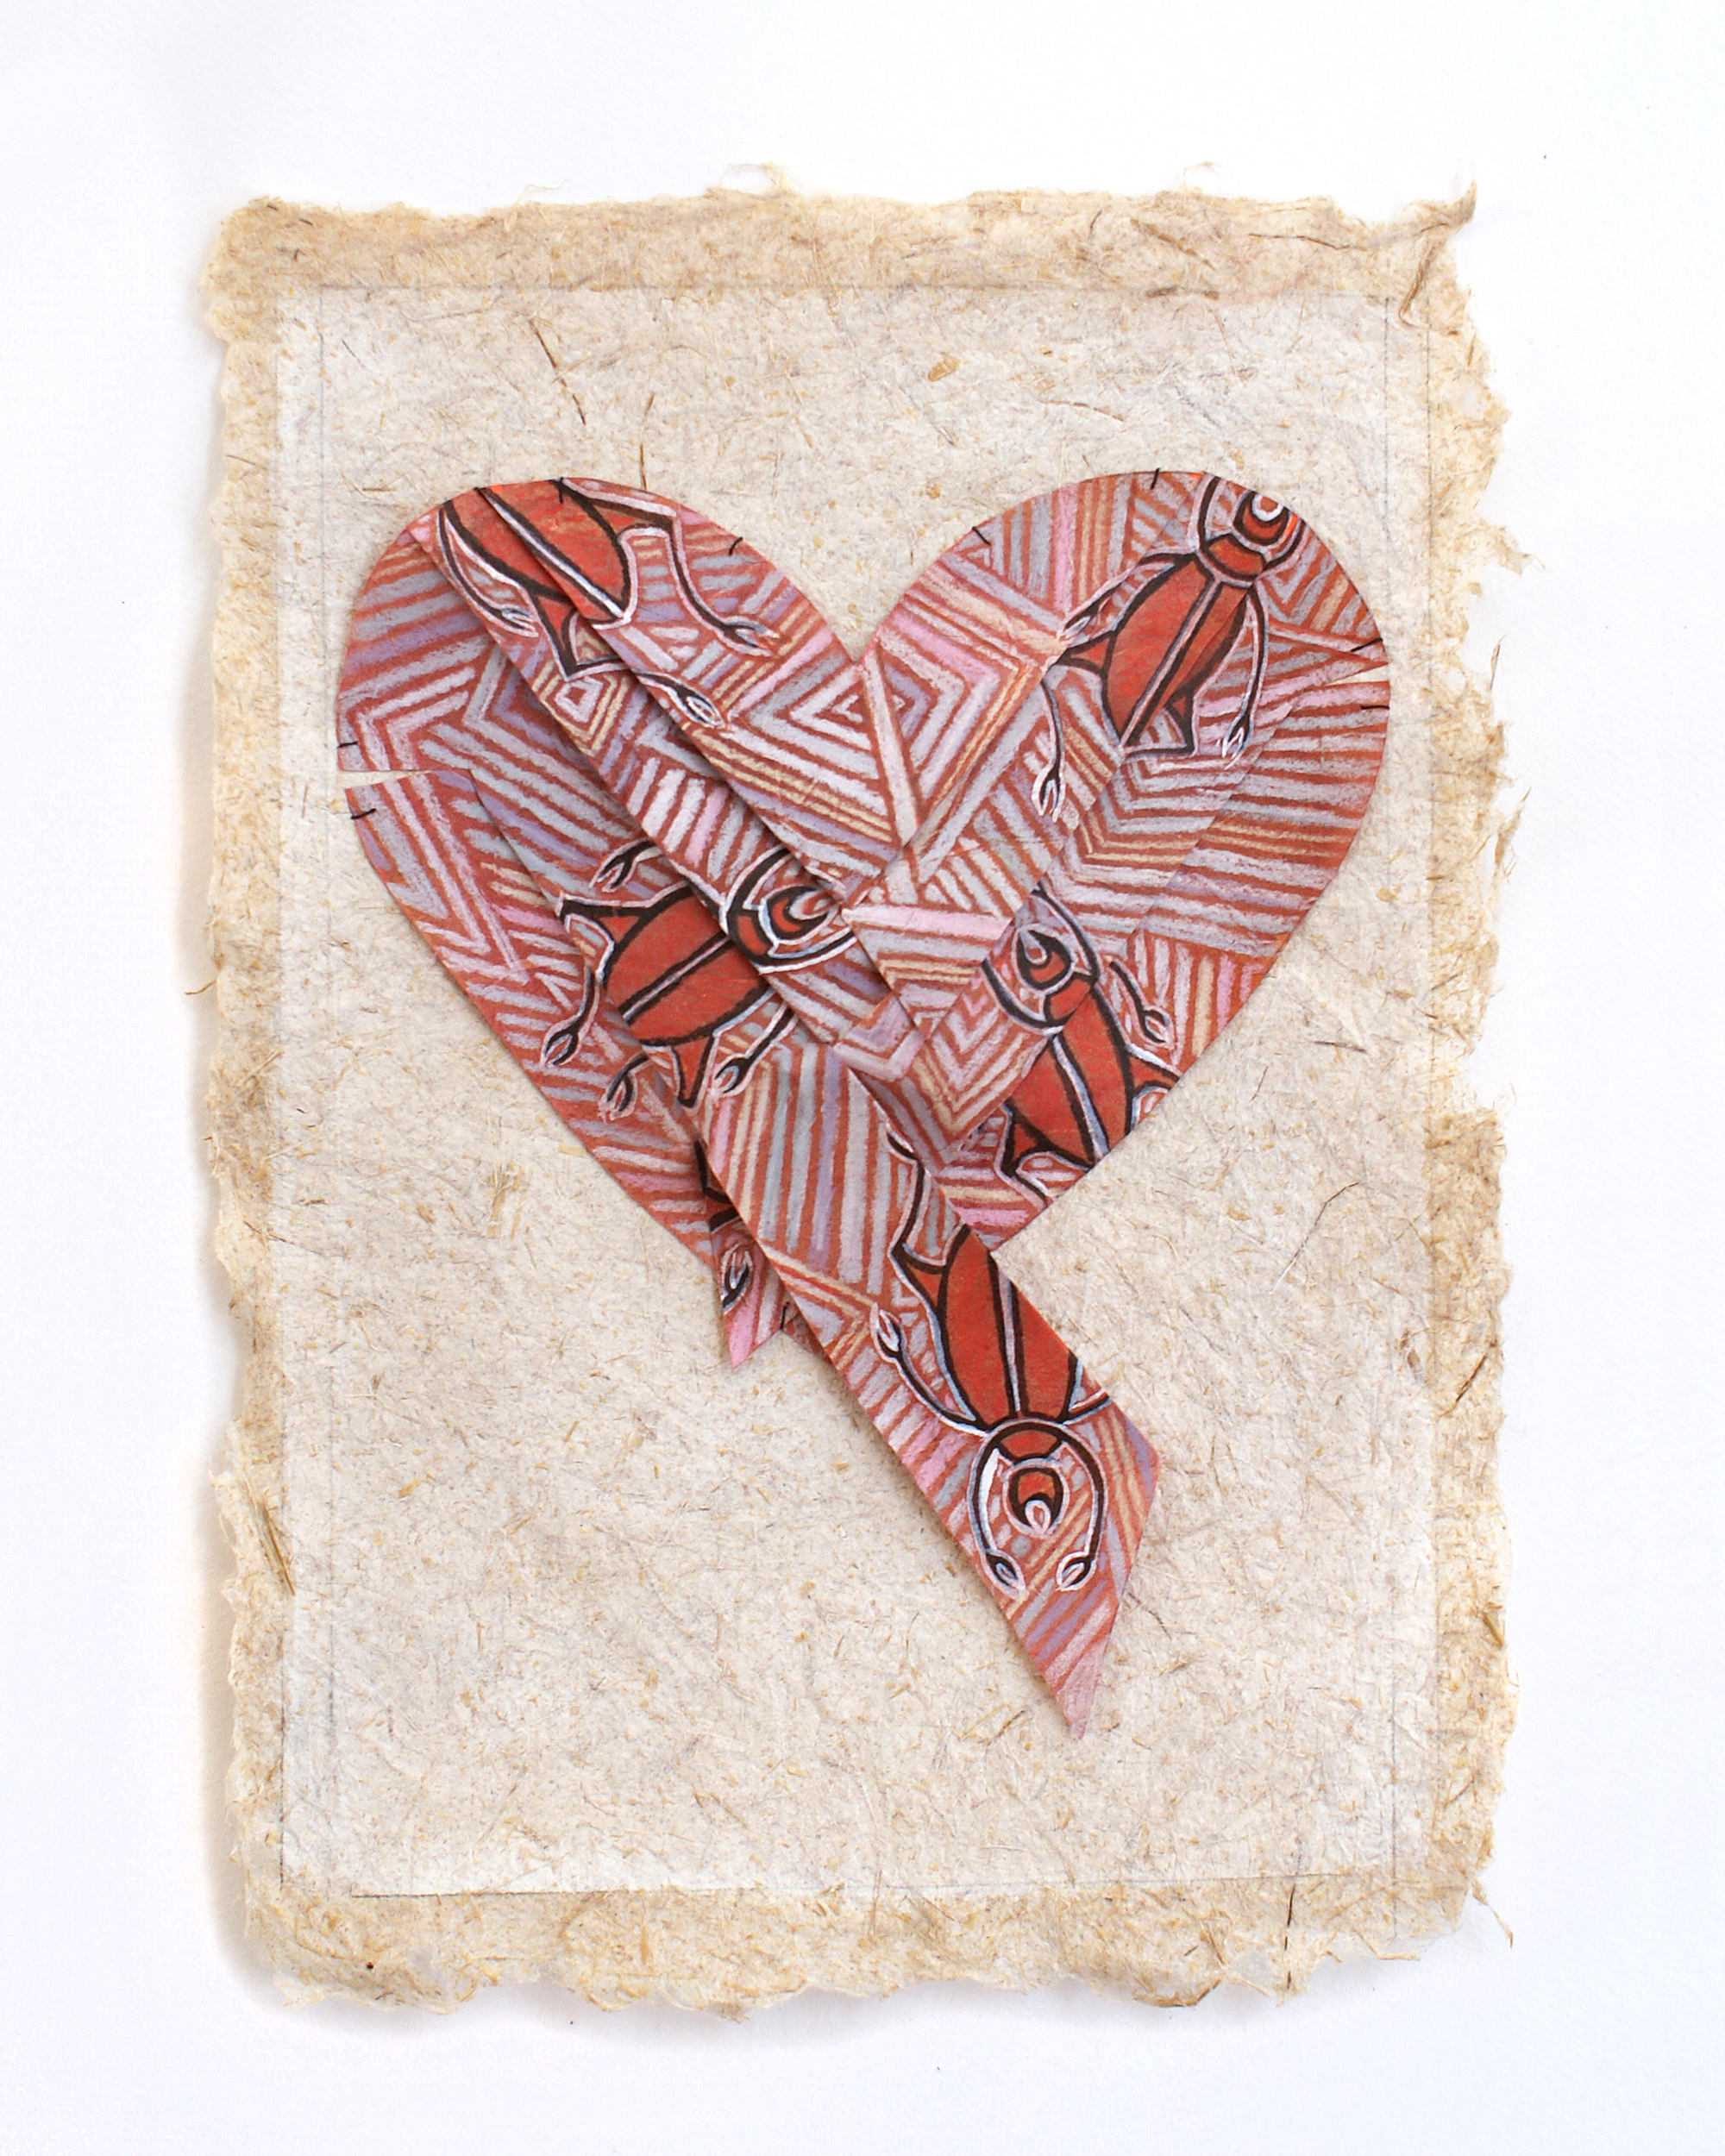    Rarotonga   ,  mixed media on handmade paper, 12x9, SOLD 